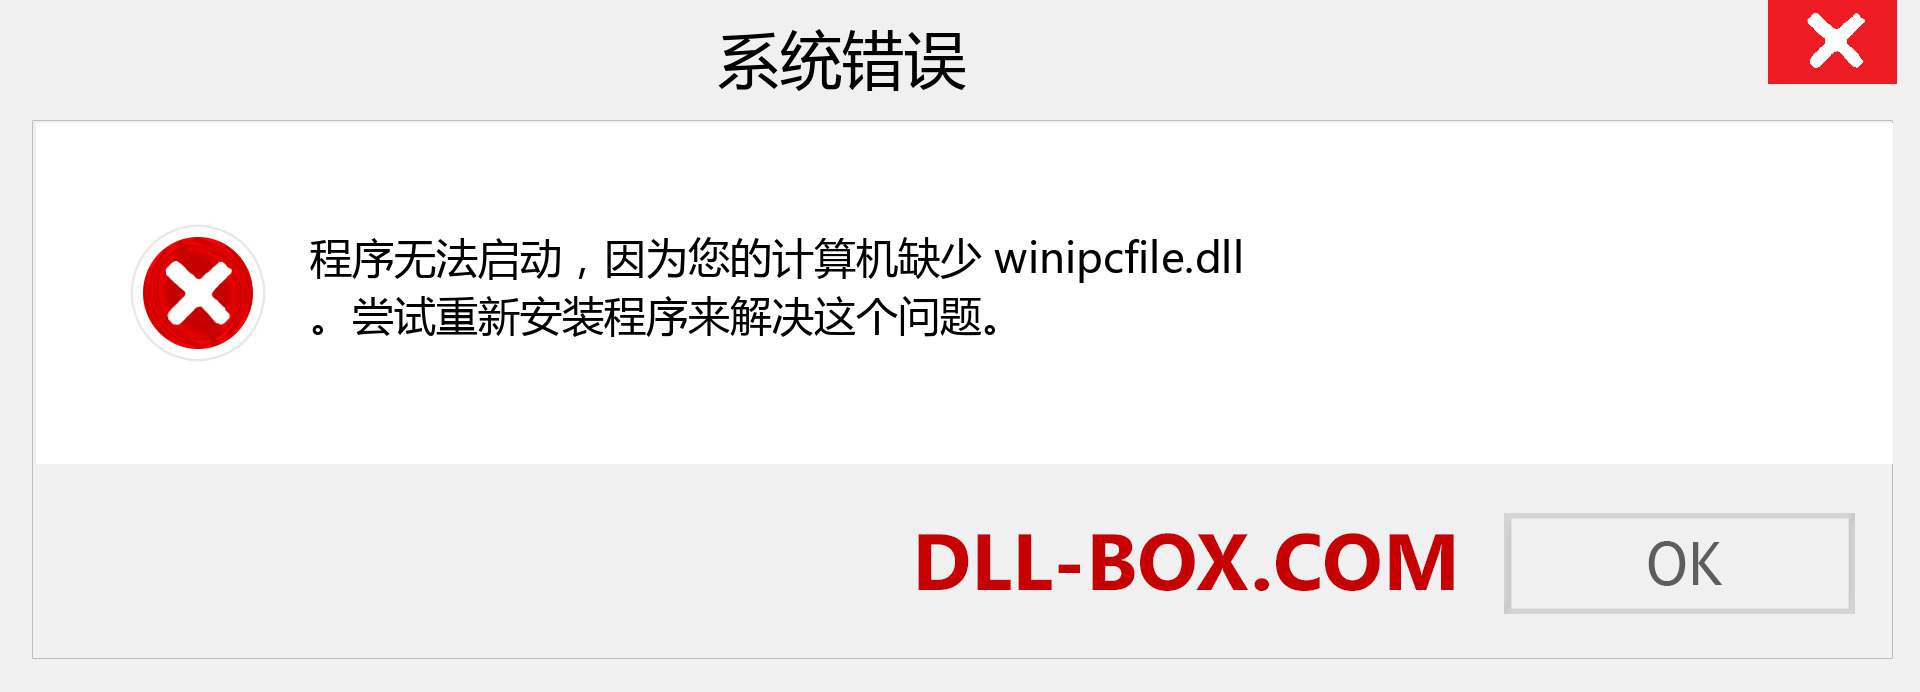 winipcfile.dll 文件丢失？。 适用于 Windows 7、8、10 的下载 - 修复 Windows、照片、图像上的 winipcfile dll 丢失错误